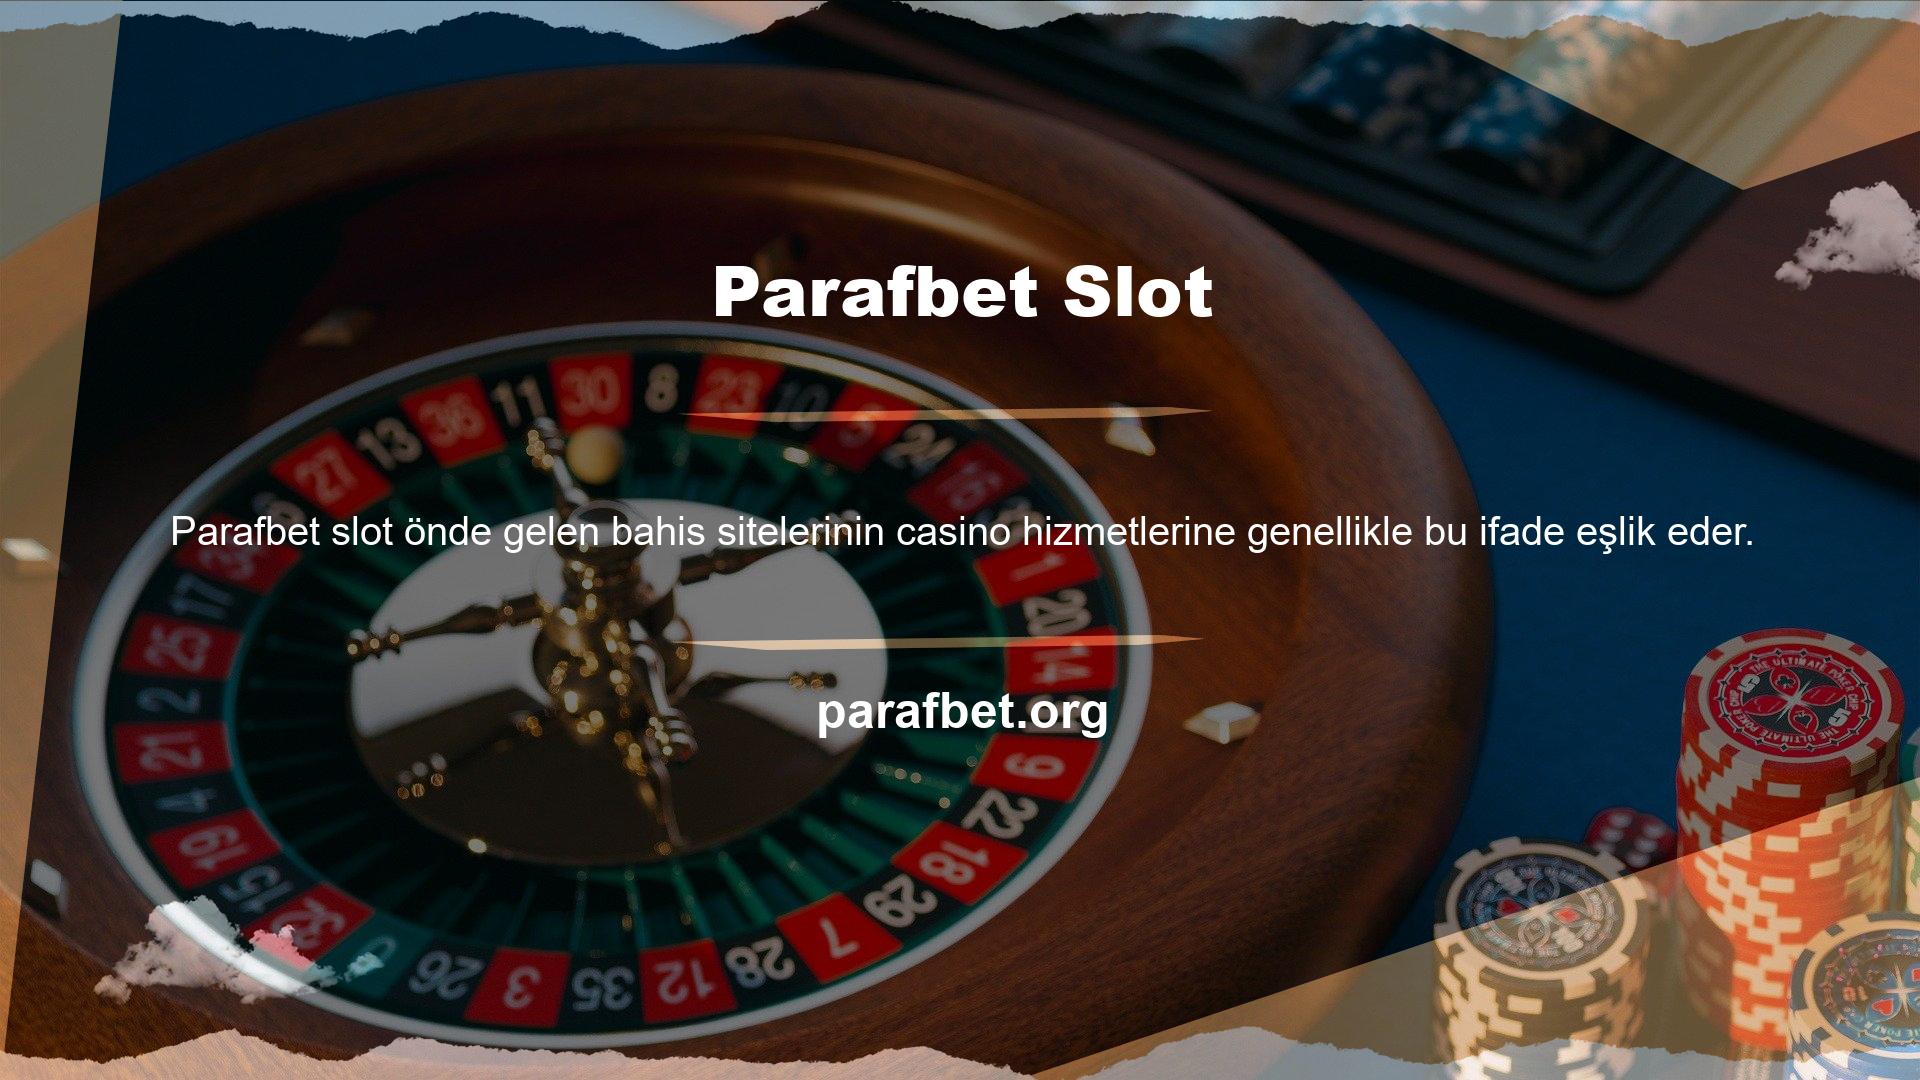 Parafbet, web sitesinde Casino izleme ve canlı Casino yayın hizmetleri sunmaktadır